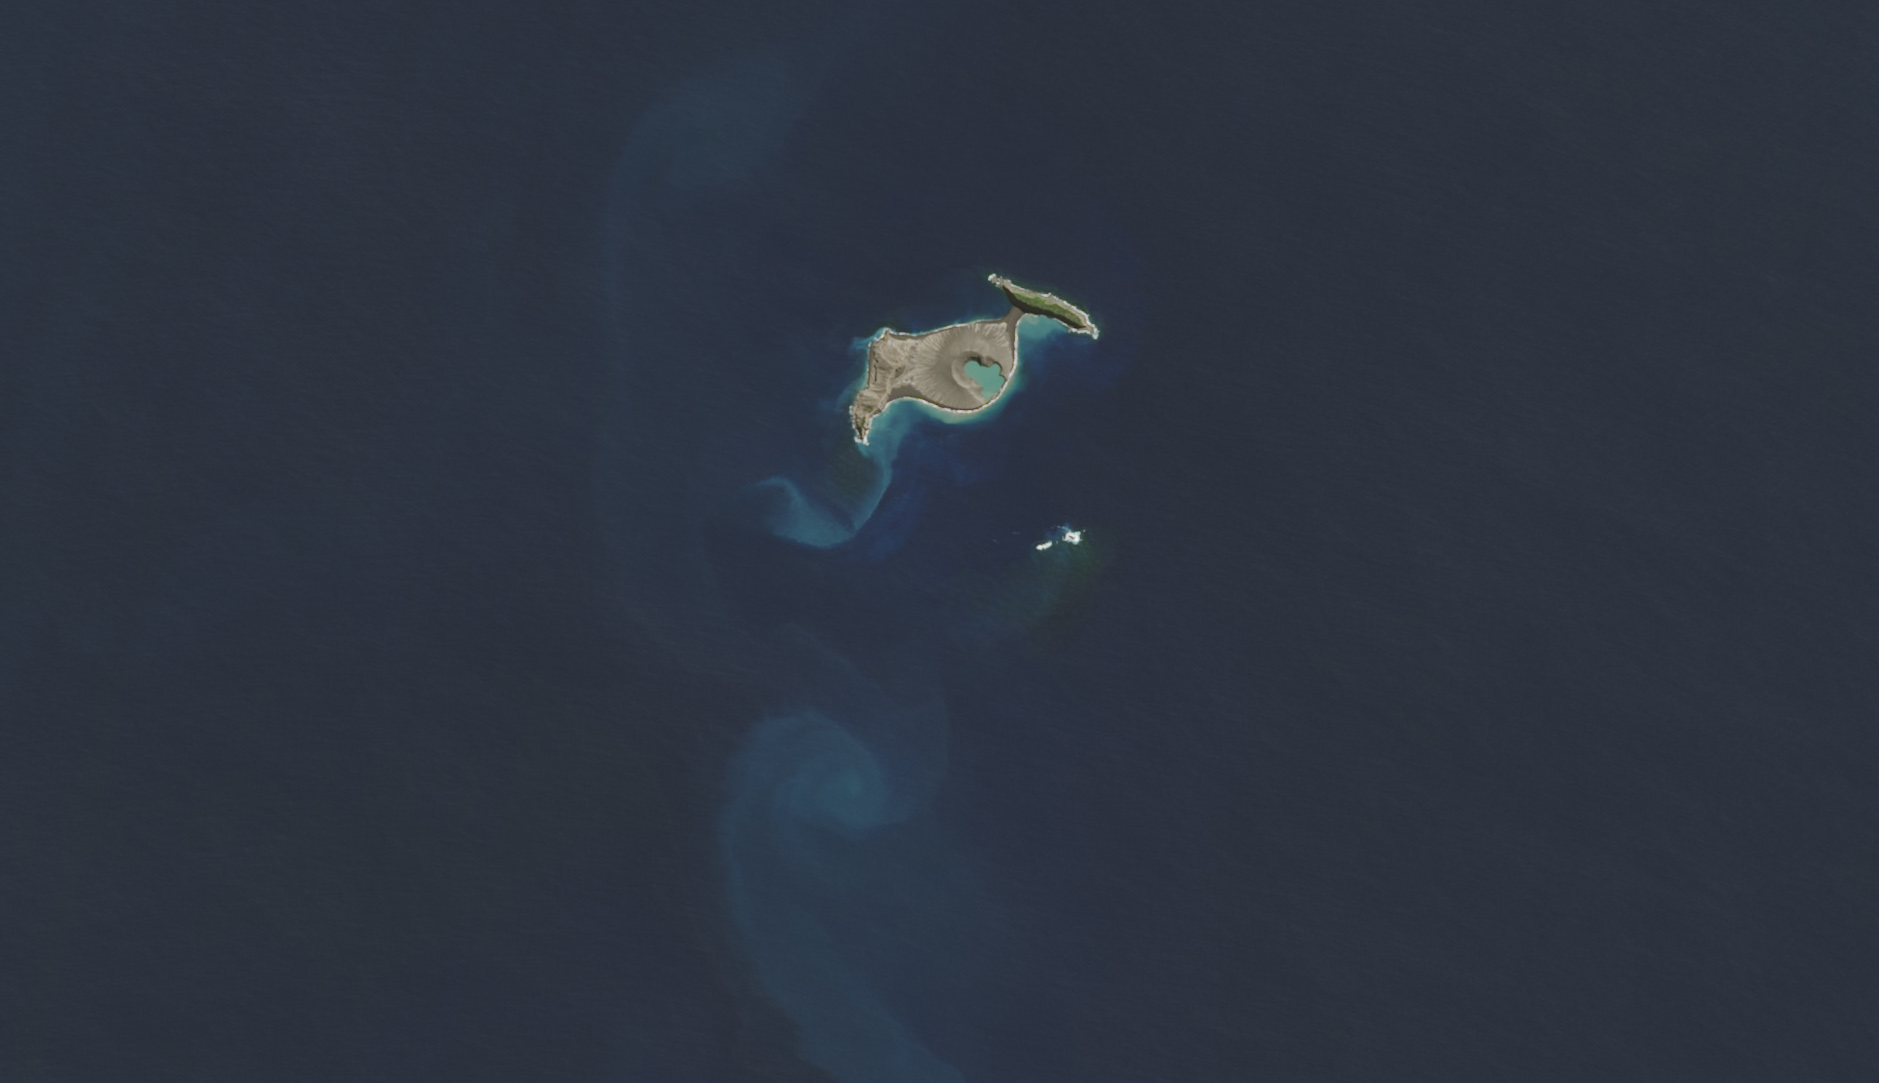 This satellite image shows an intact Hunga Tonga-Hunga Ha’apai